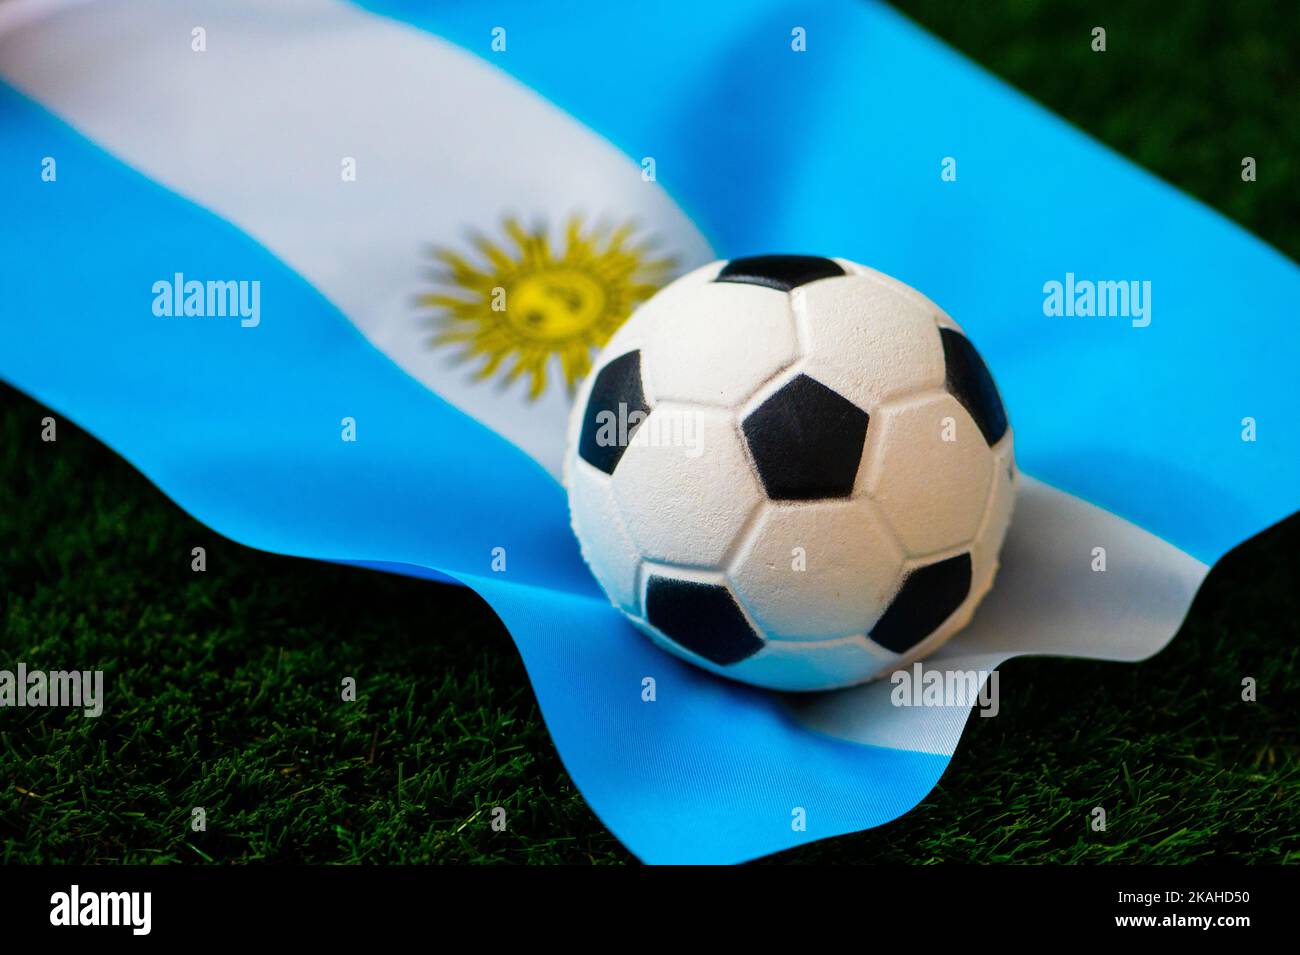 Argentinafootballteamwallpaper201809